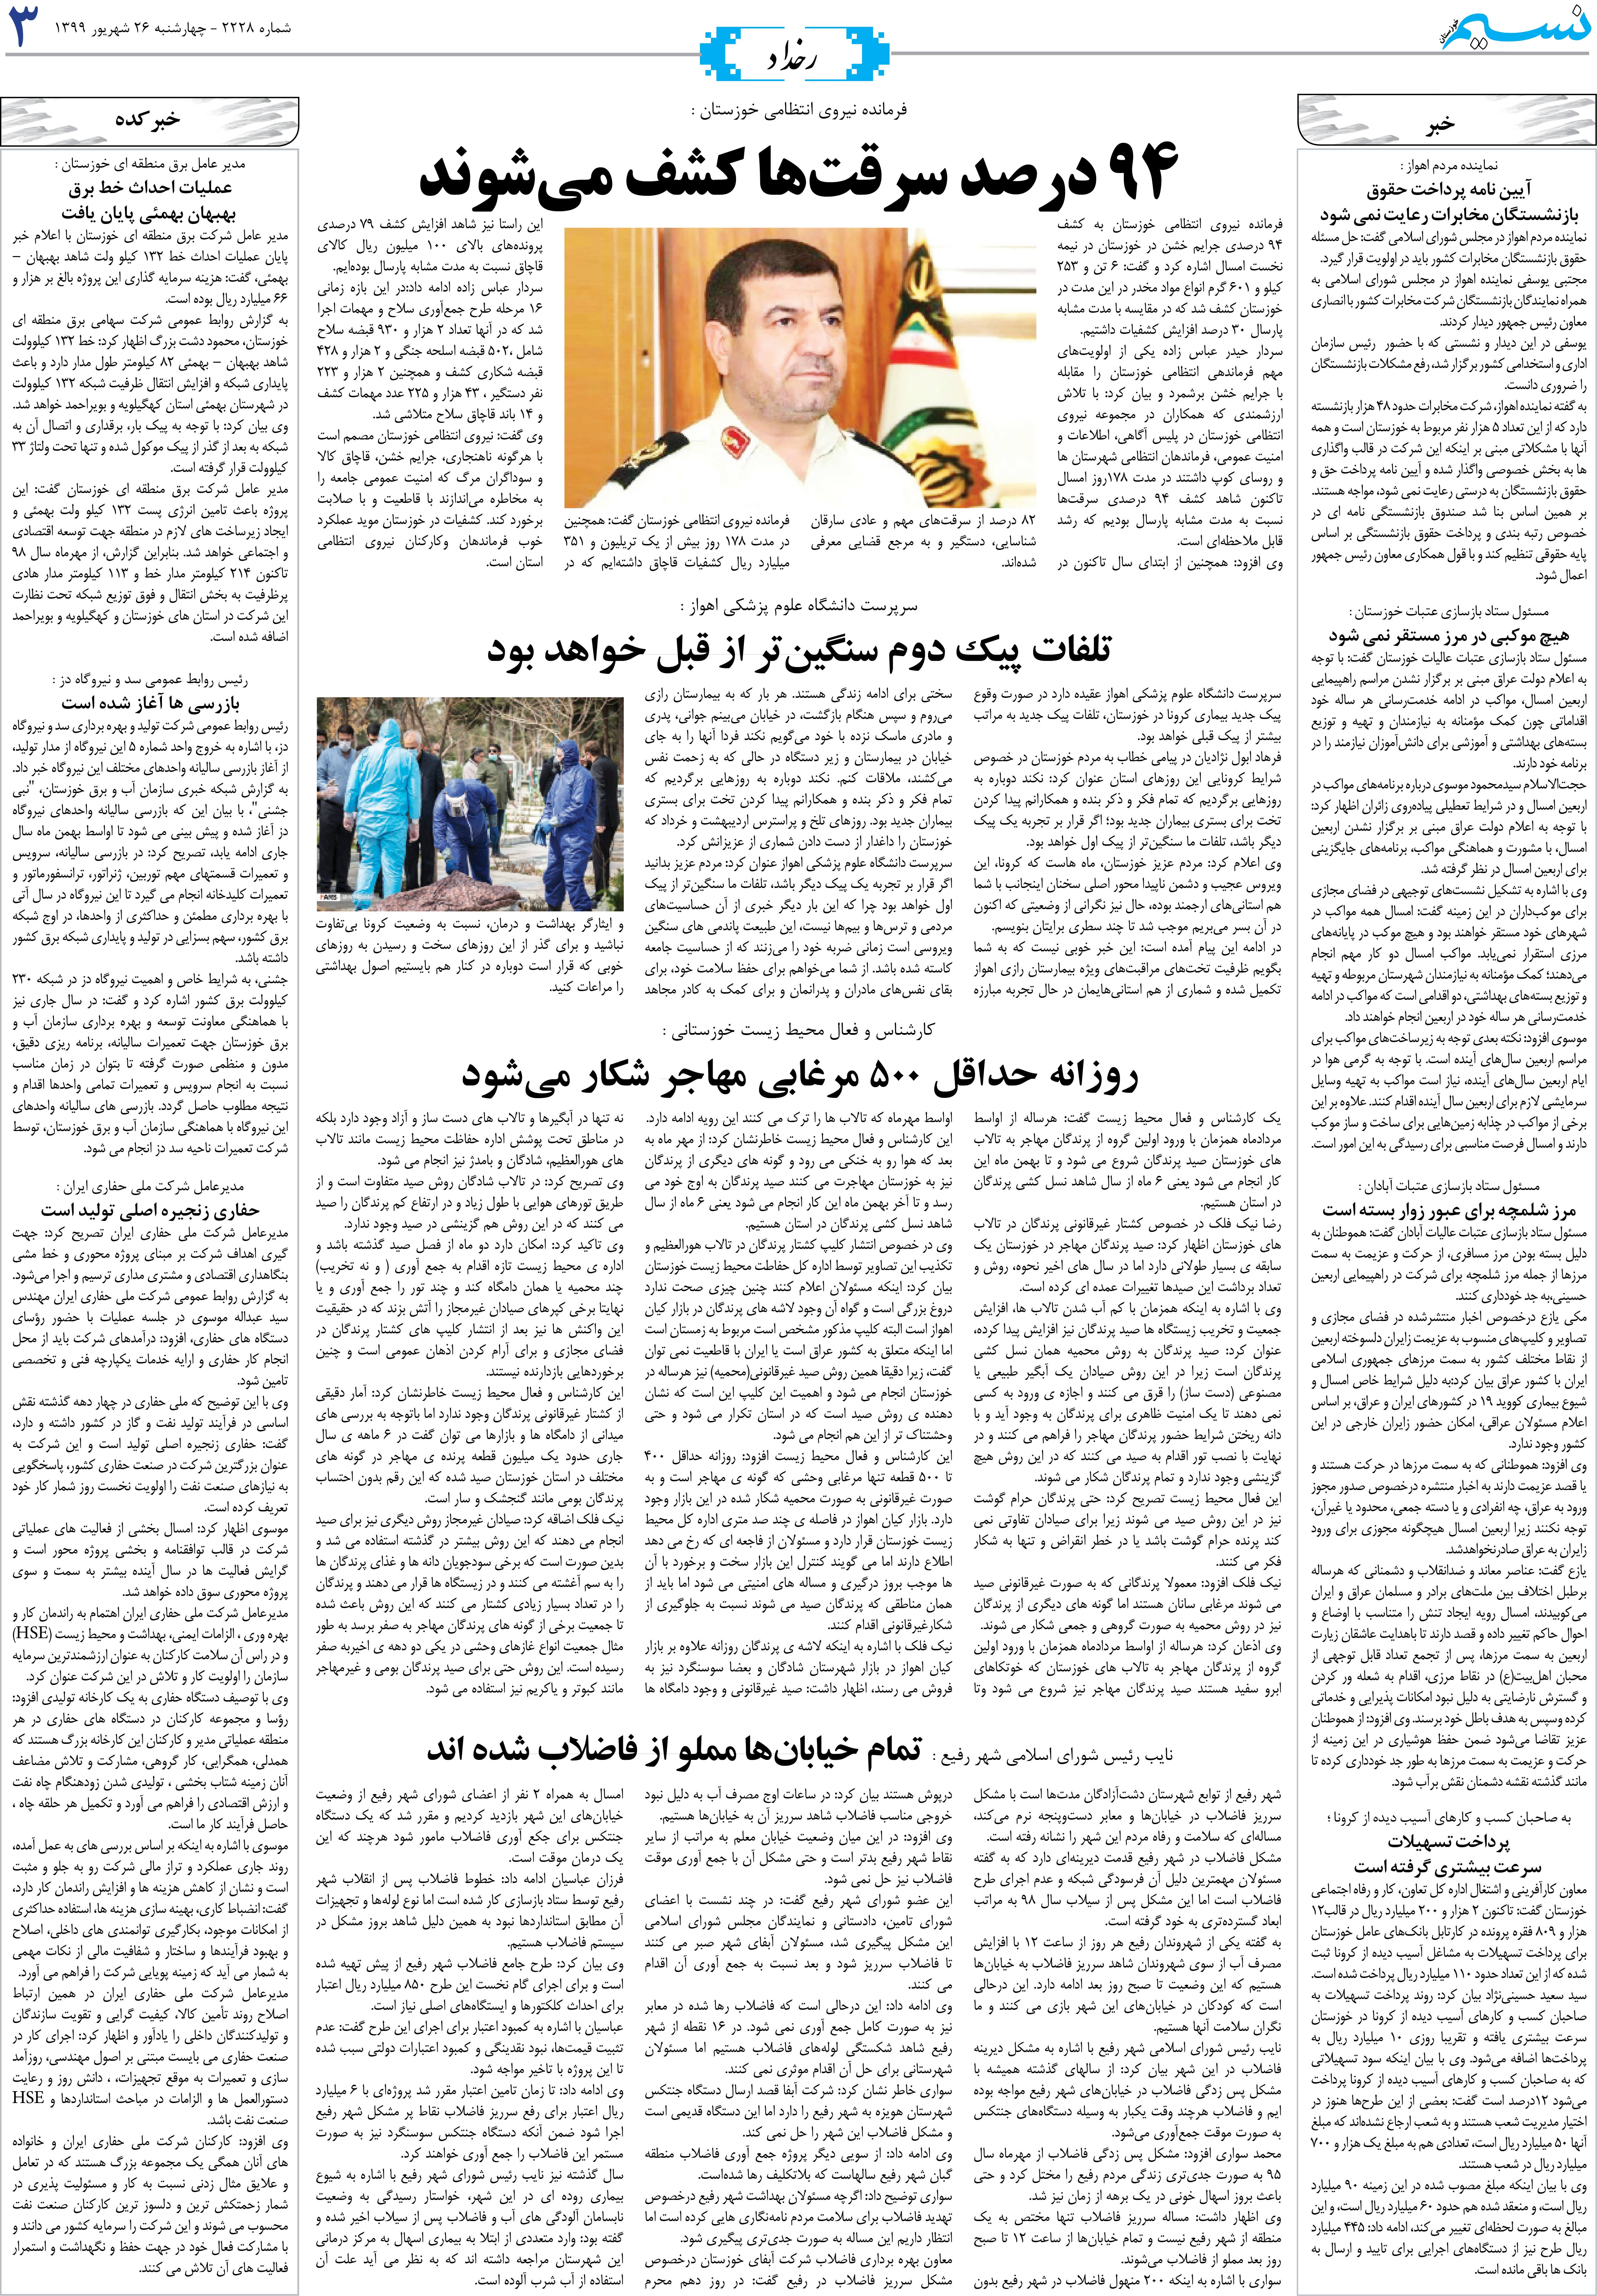 صفحه رخداد روزنامه نسیم شماره 2228